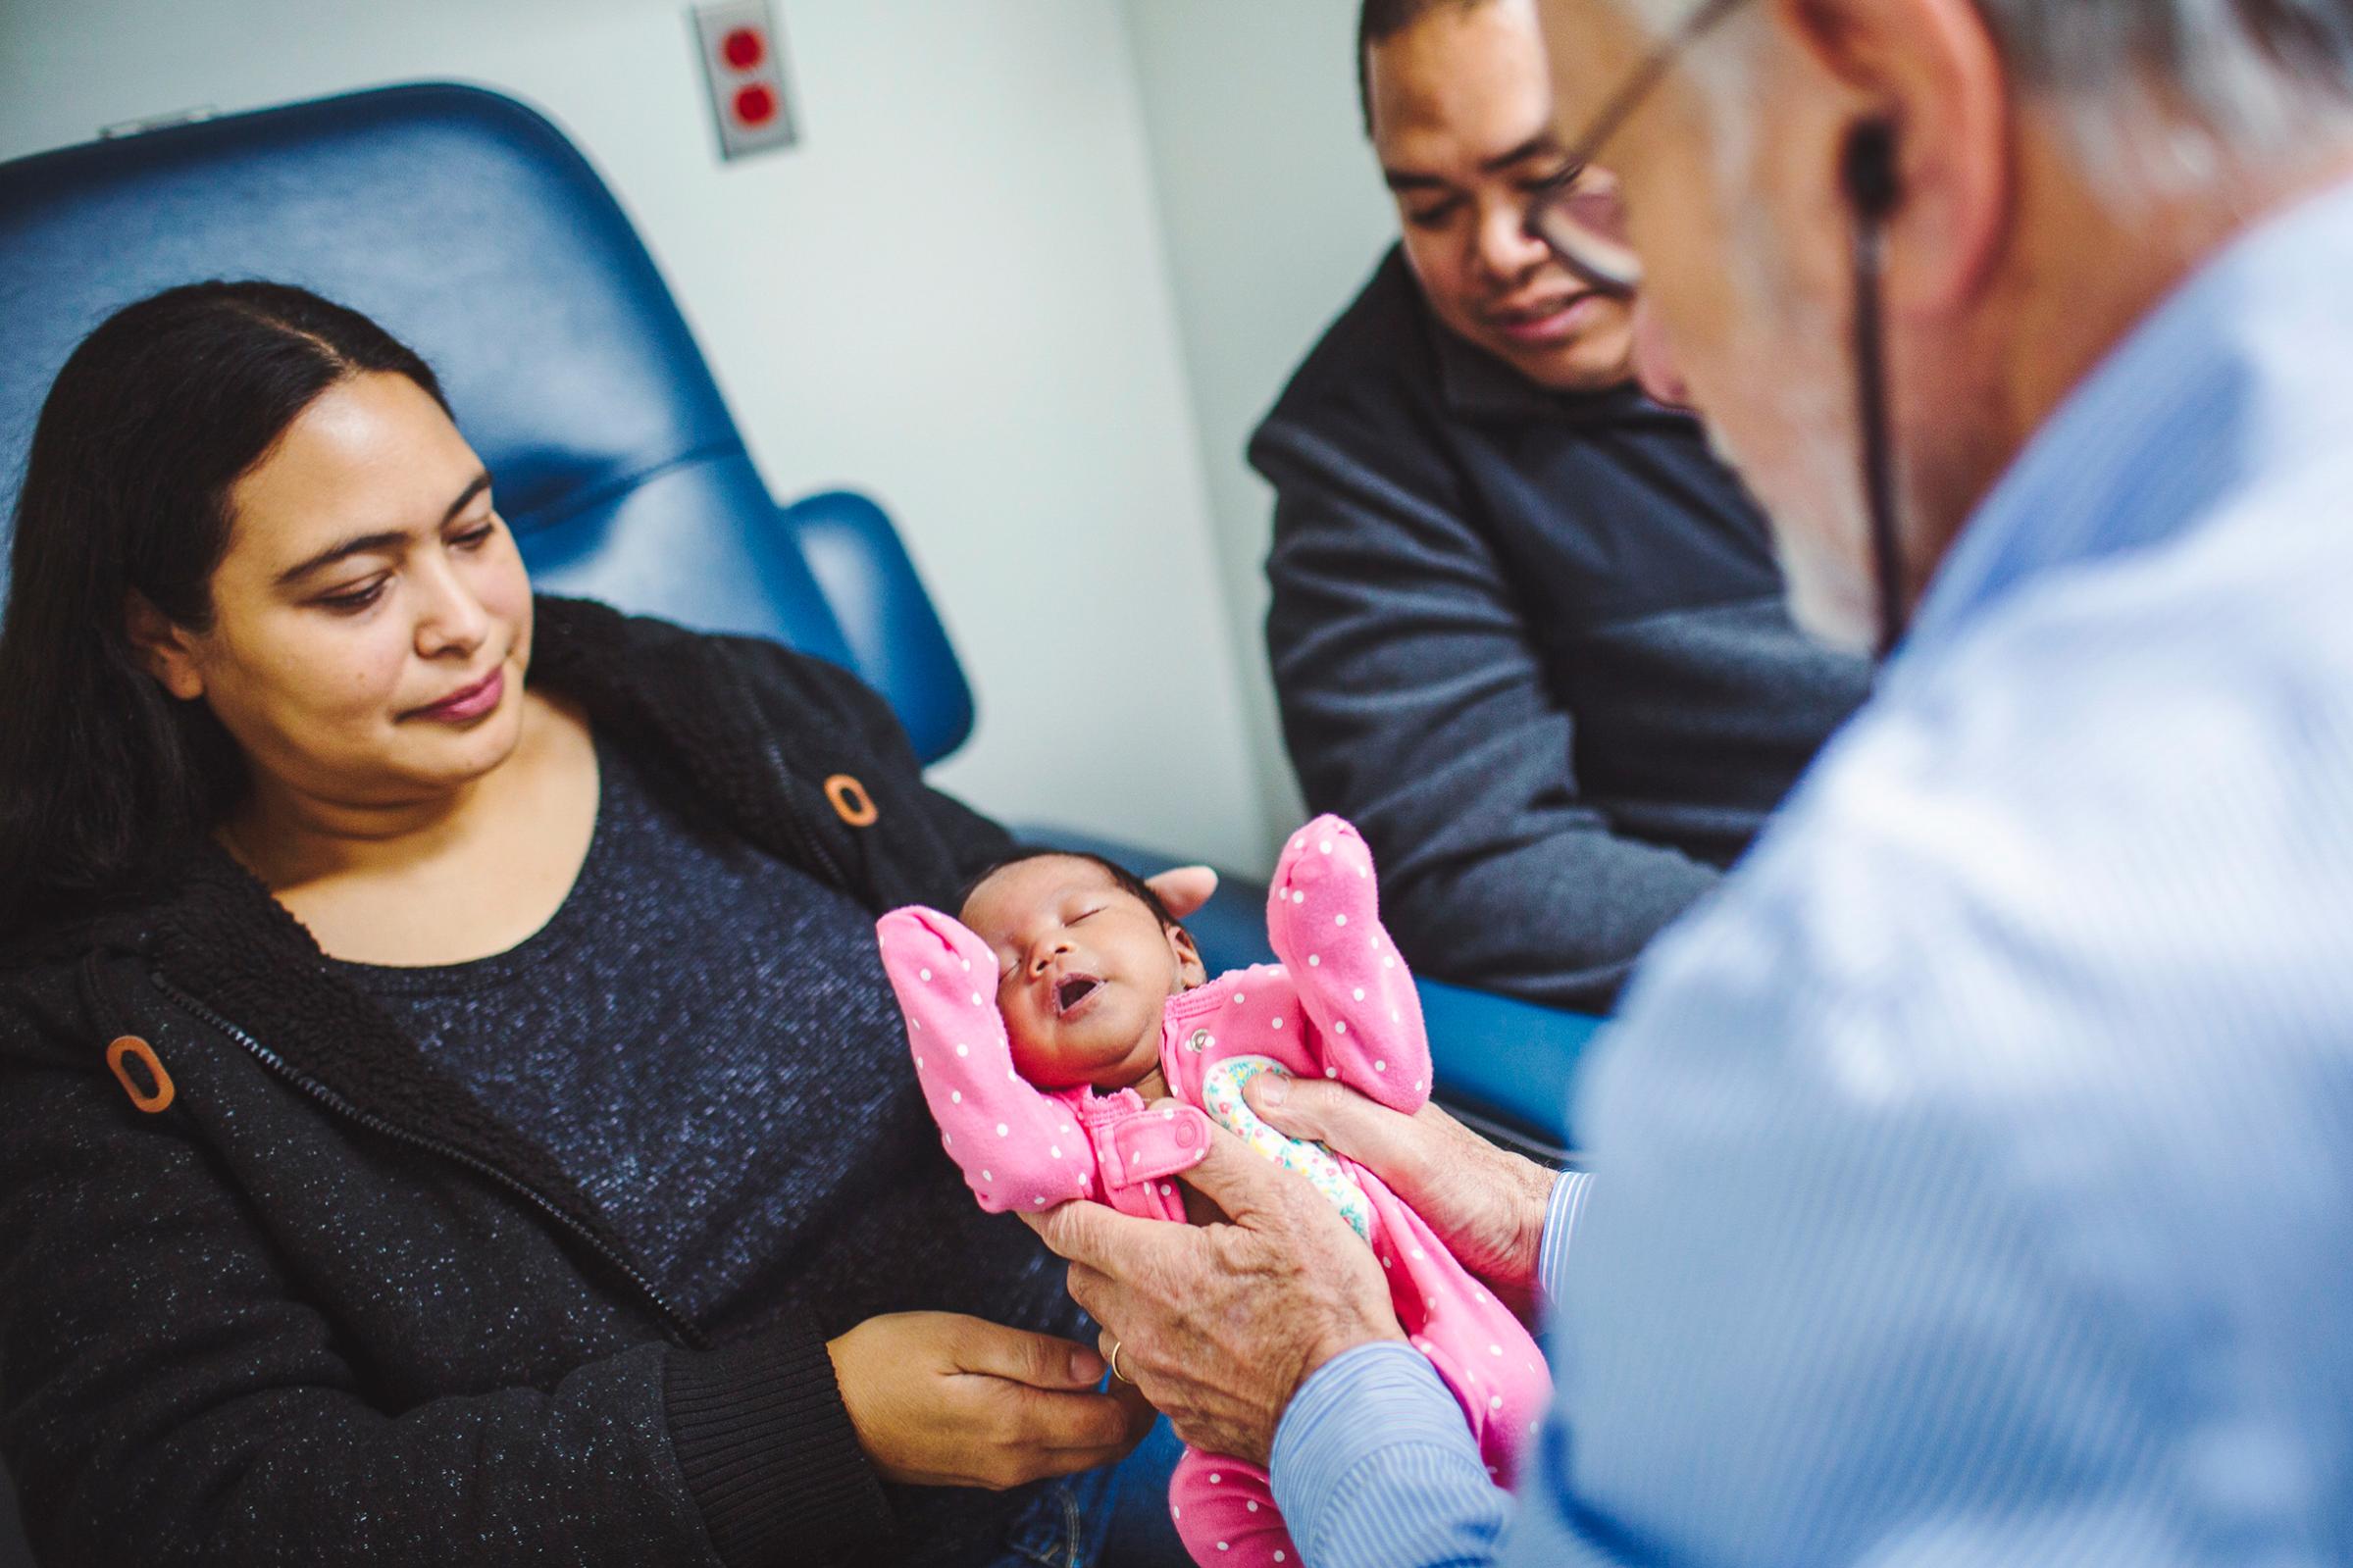 Nichelle Obar's Baby receives Stem Cells